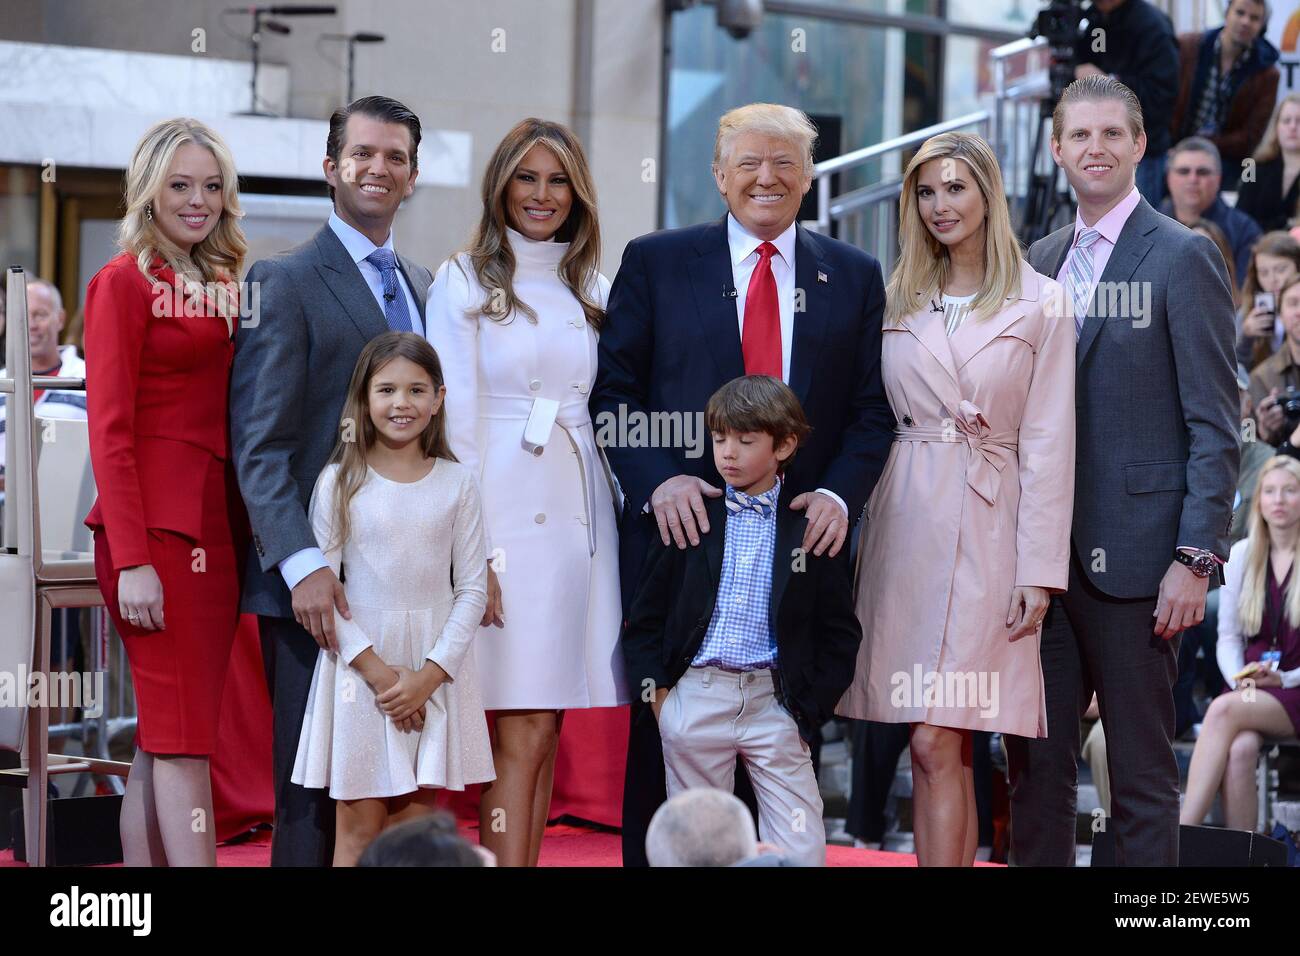 G-D) le candidat républicain à la présidence Donald Trump (cravate rouge)  pose avec des membres de sa famille (l-r) fille Tiffany Trump, fils Donald  Trump Jr., petite-fille Kai Trump, épouse Melania Trump,